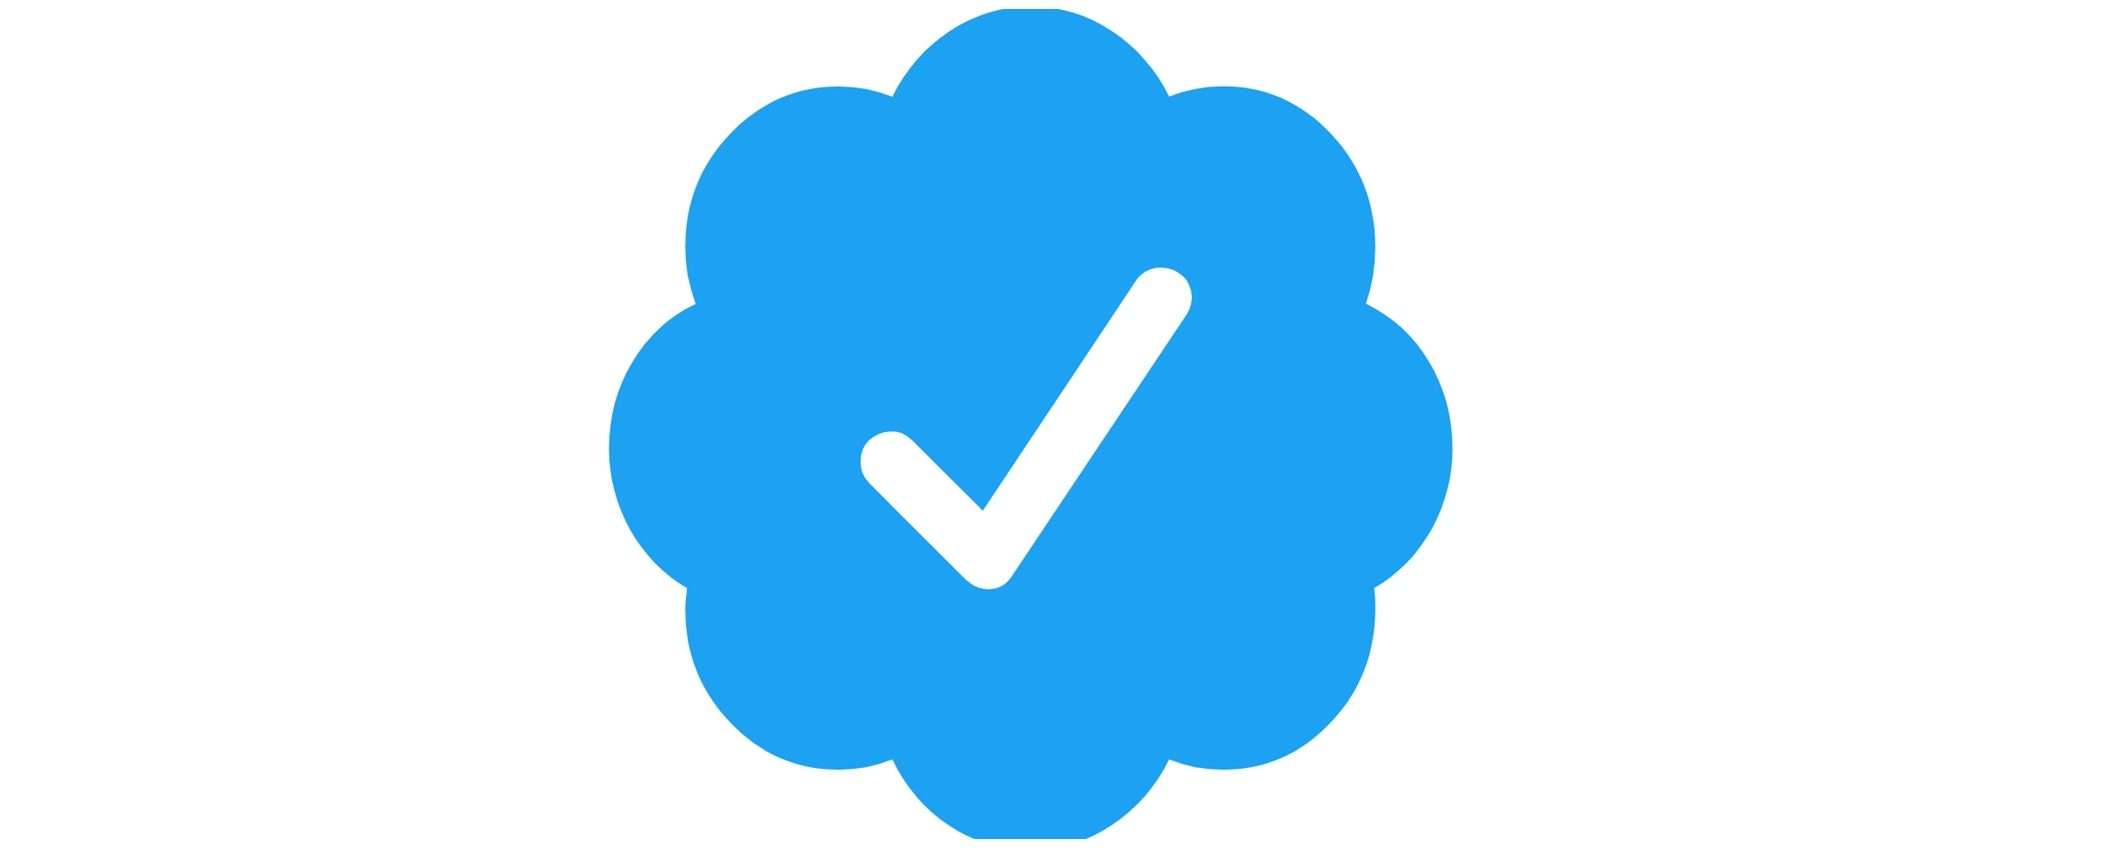 X introduce le spunte blu per gli account influenti